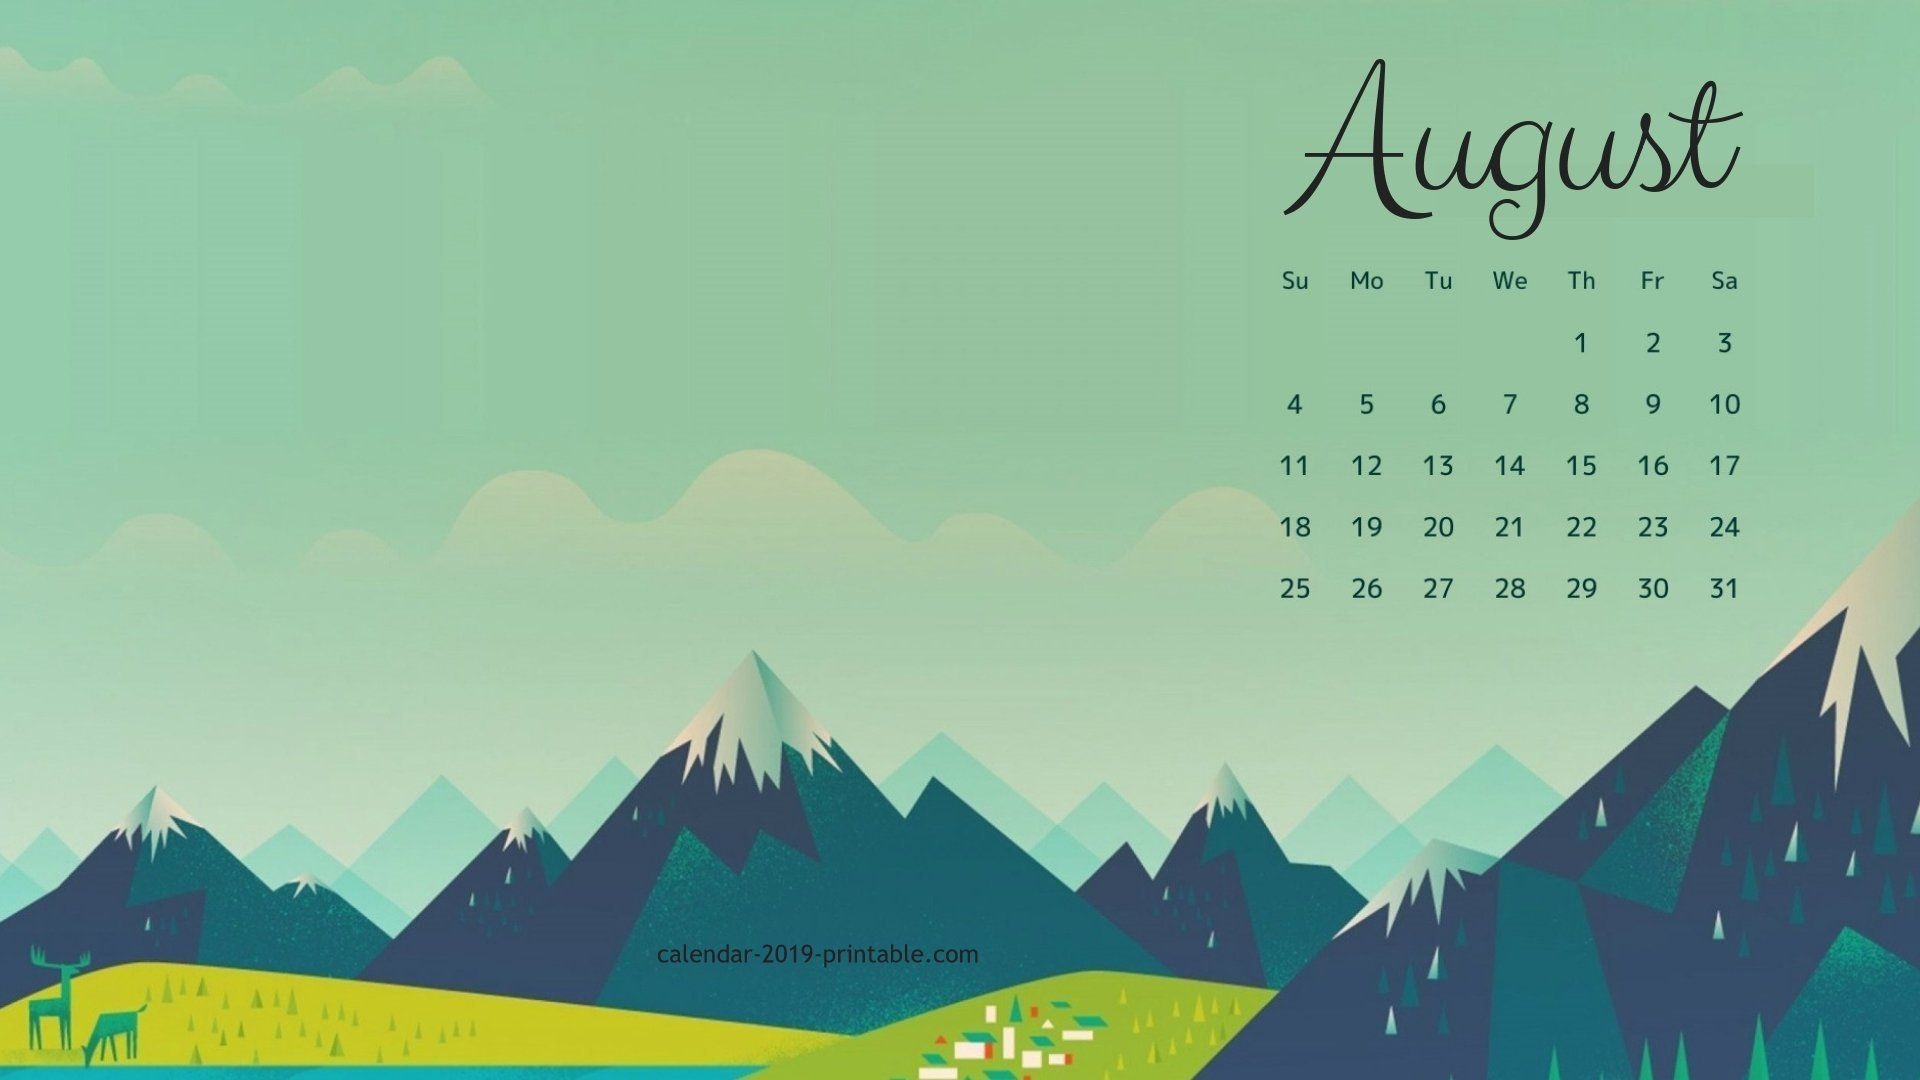 August Calendar Image For Desktop Background